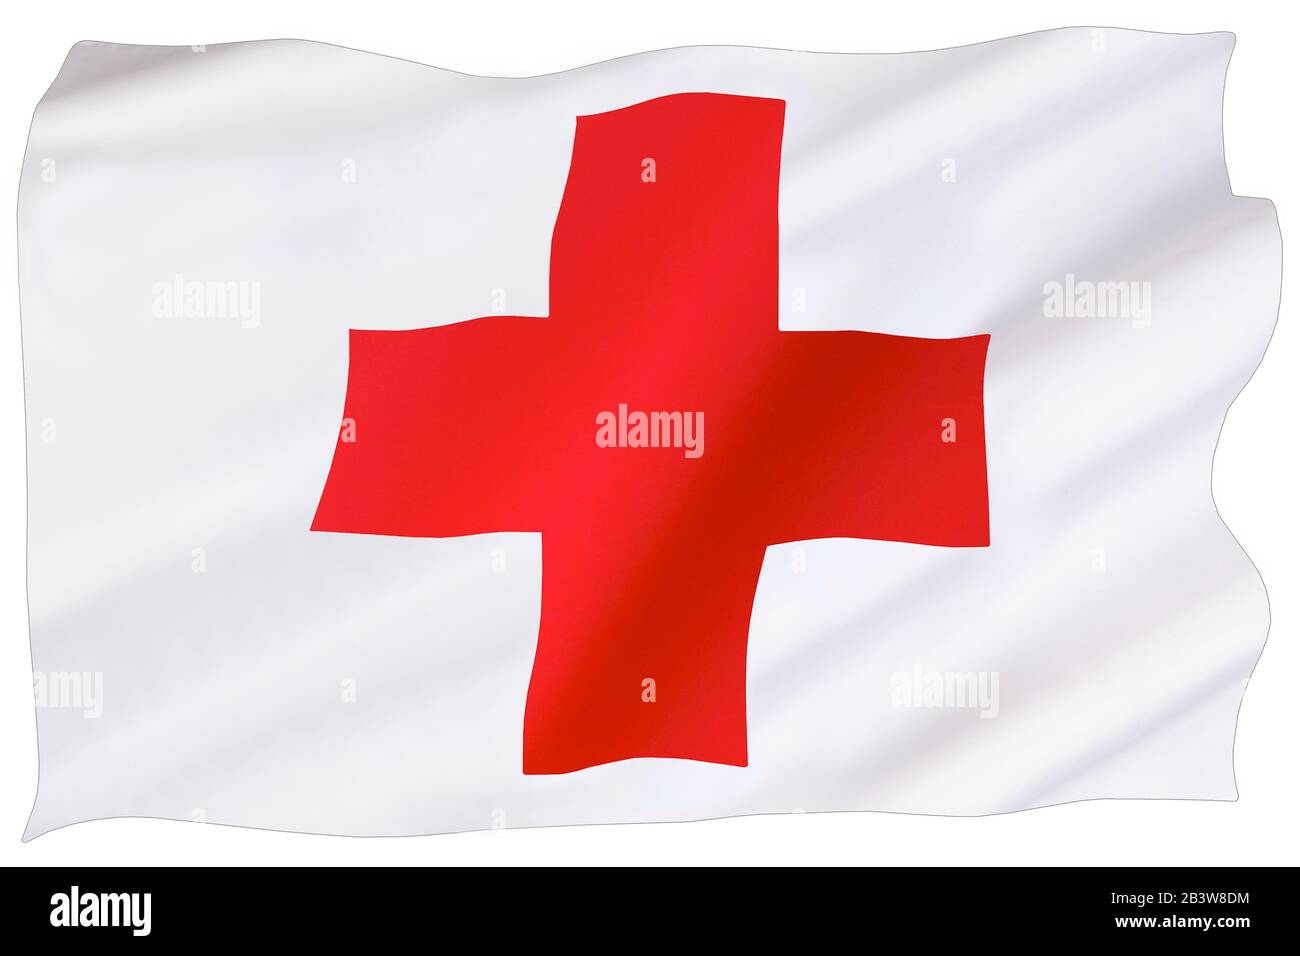 Die Flagge des Roten Kreuzes - Internationale Bewegung des Roten Kreuzes und des Roten Halbmonds - sind internationale humanitäre Organisationen, die Hilfe leisten Stockfoto